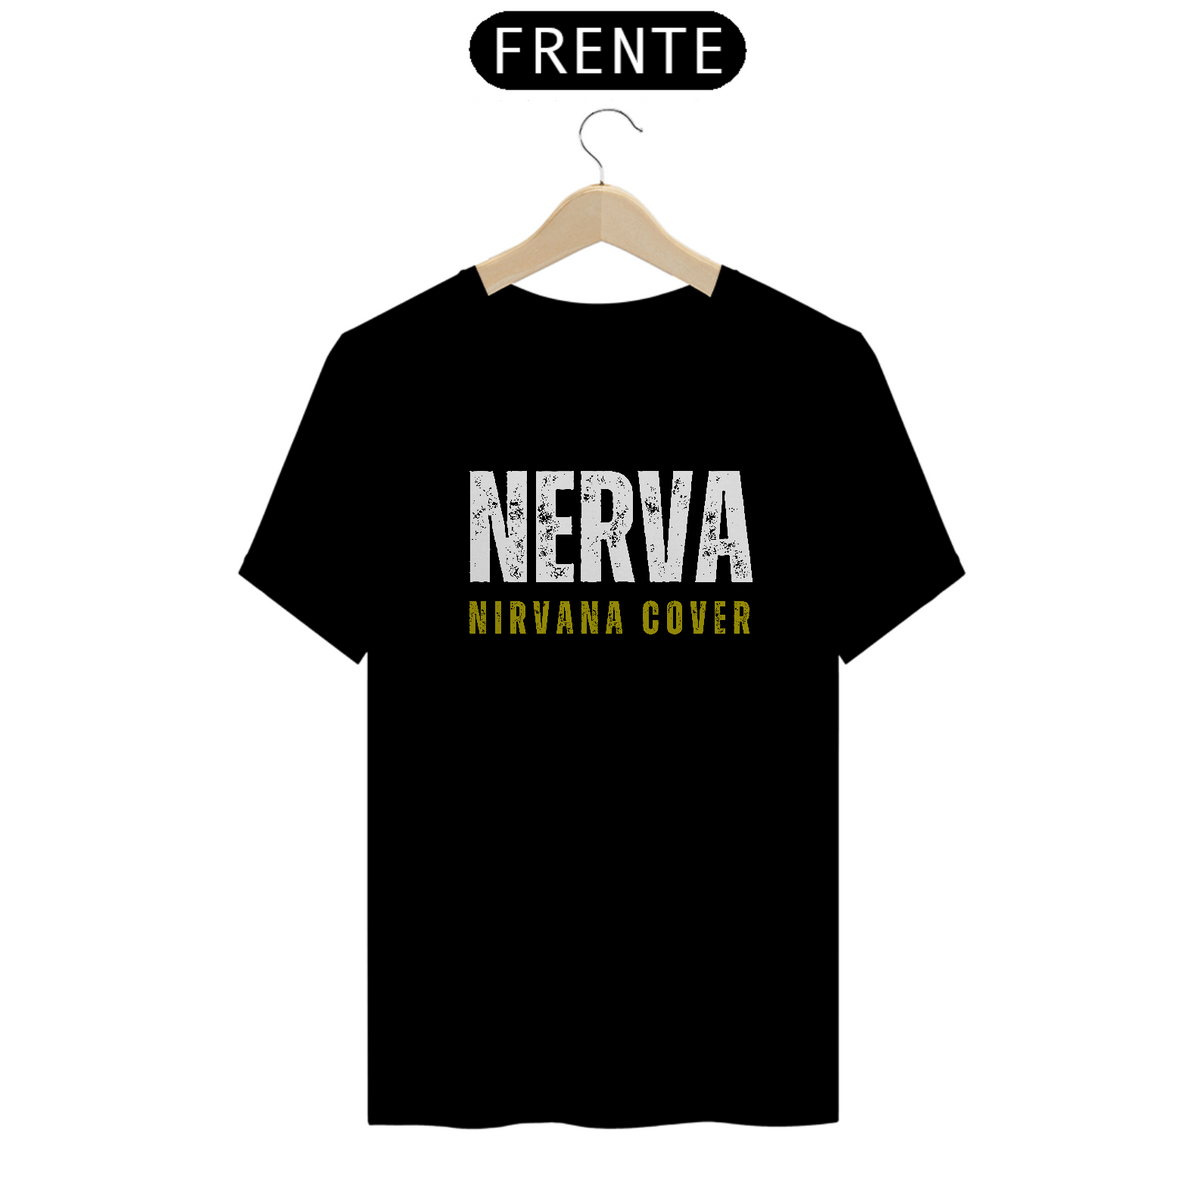 Nome do produto: Camiseta - Nerva